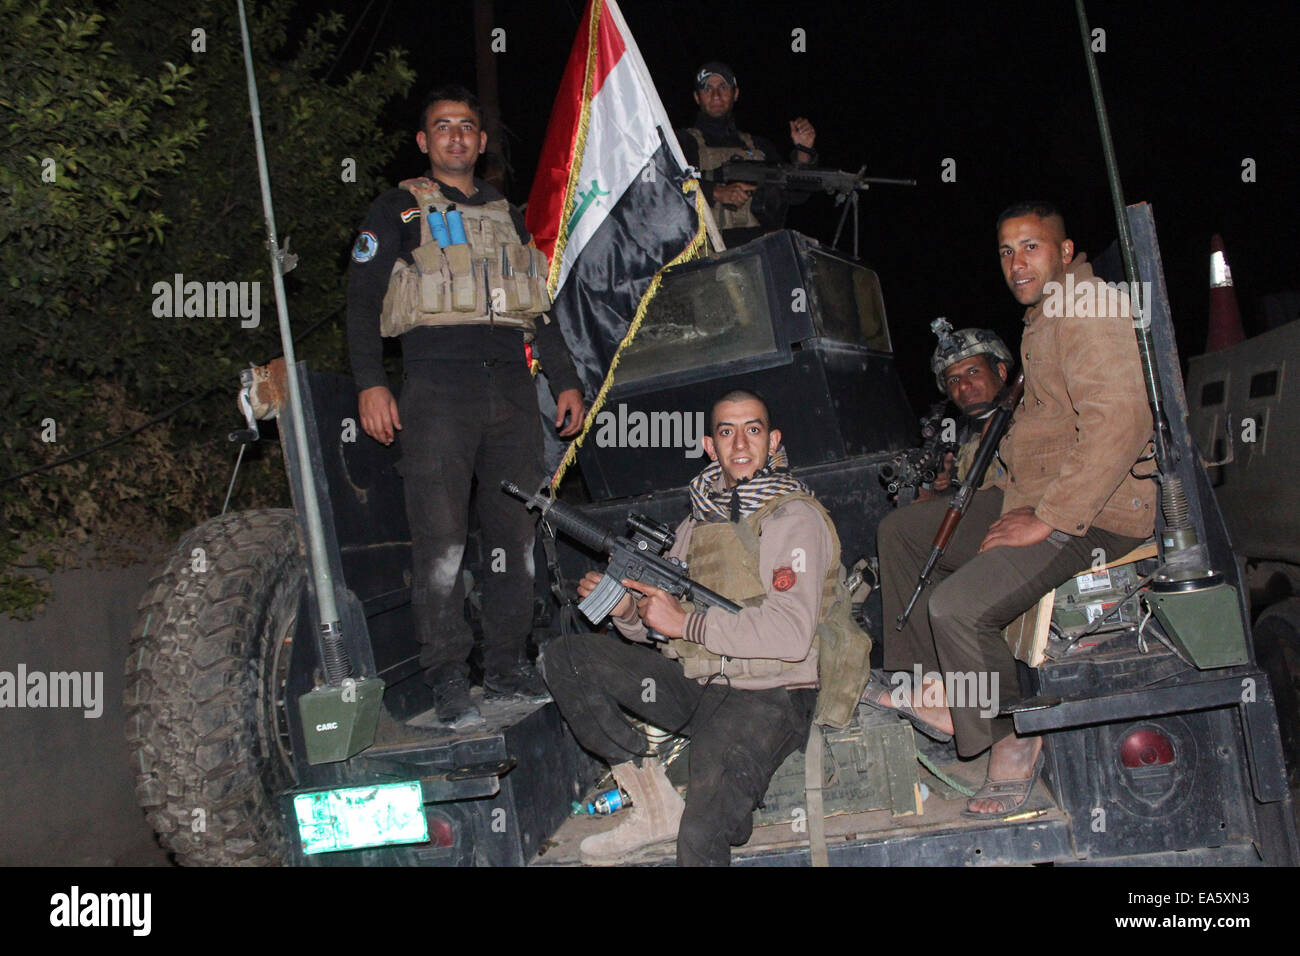 (141107) -- DHULUIYA, 7 novembre 2014 (Xinhua) -- des soldats iraquiens se préparer à lutter contre l'Etat islamique militants dans la ville d'Dhuluiya, quelque 90 km au nord de Bagdad, le 6 novembre 2014. (Xinhua/Ahmed Shaalan) Banque D'Images